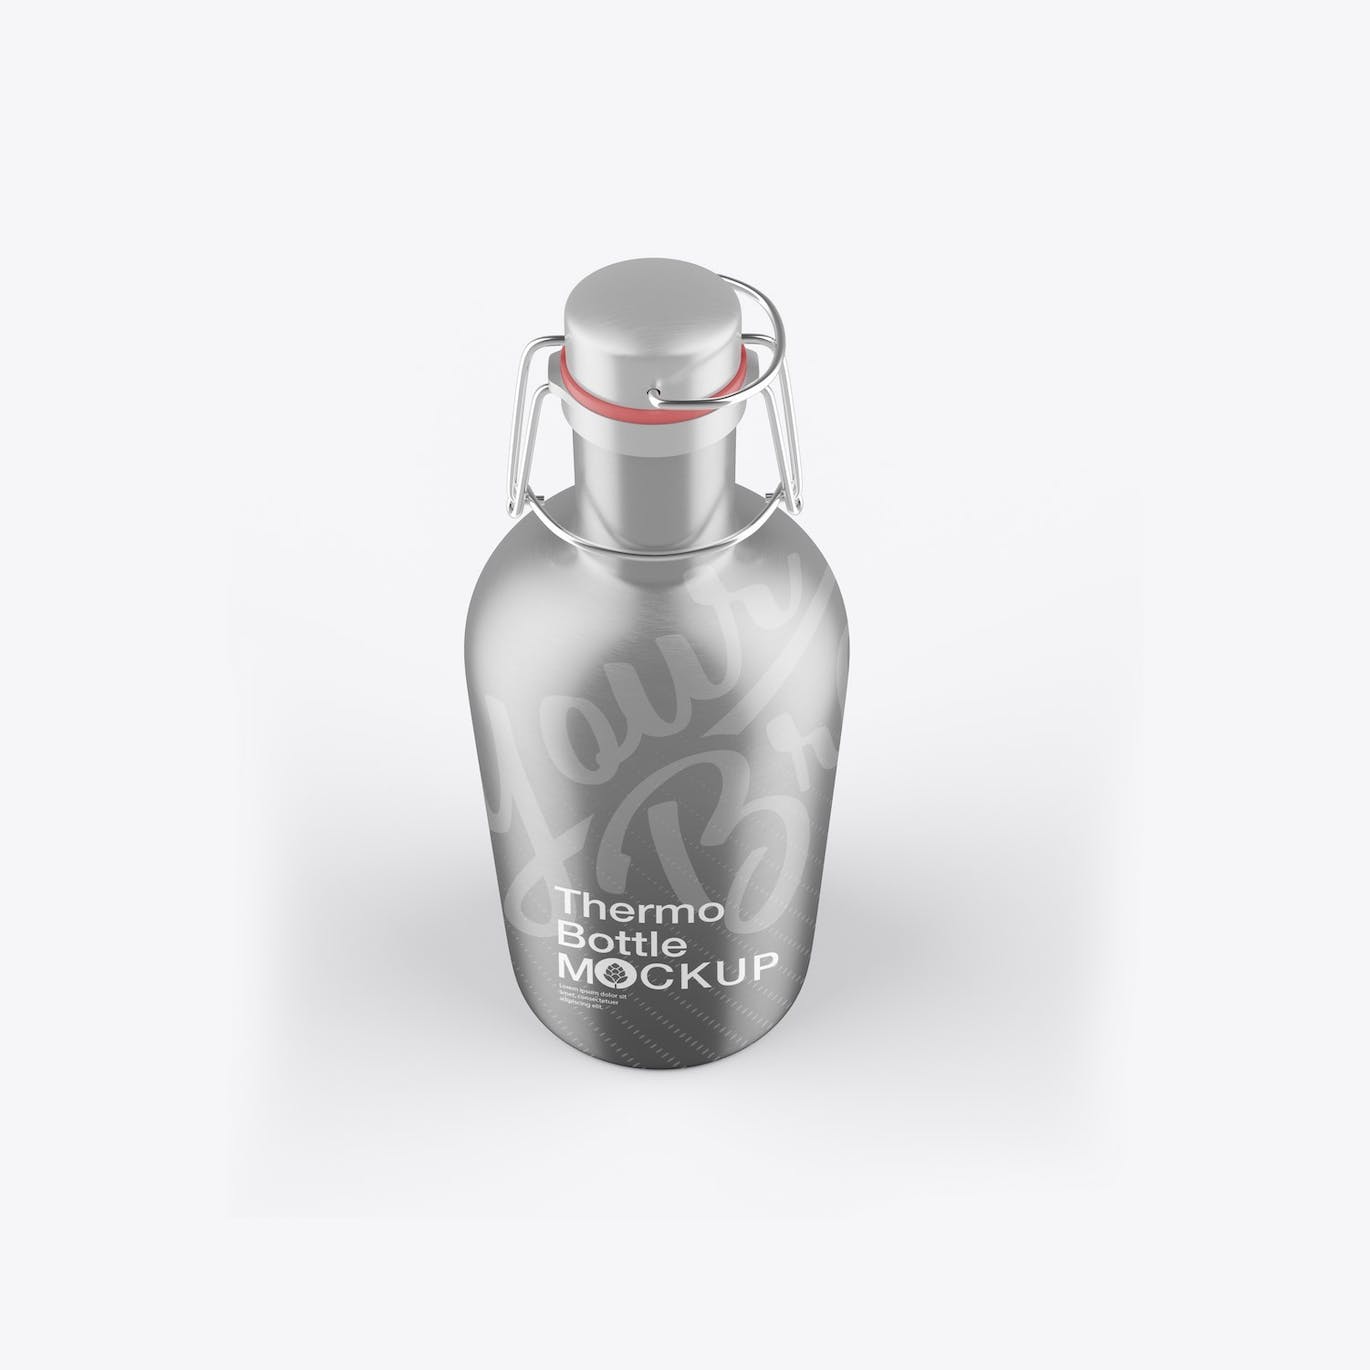 金属热水瓶包装设计样机 Thermo Bottle Mockup 样机素材 第13张